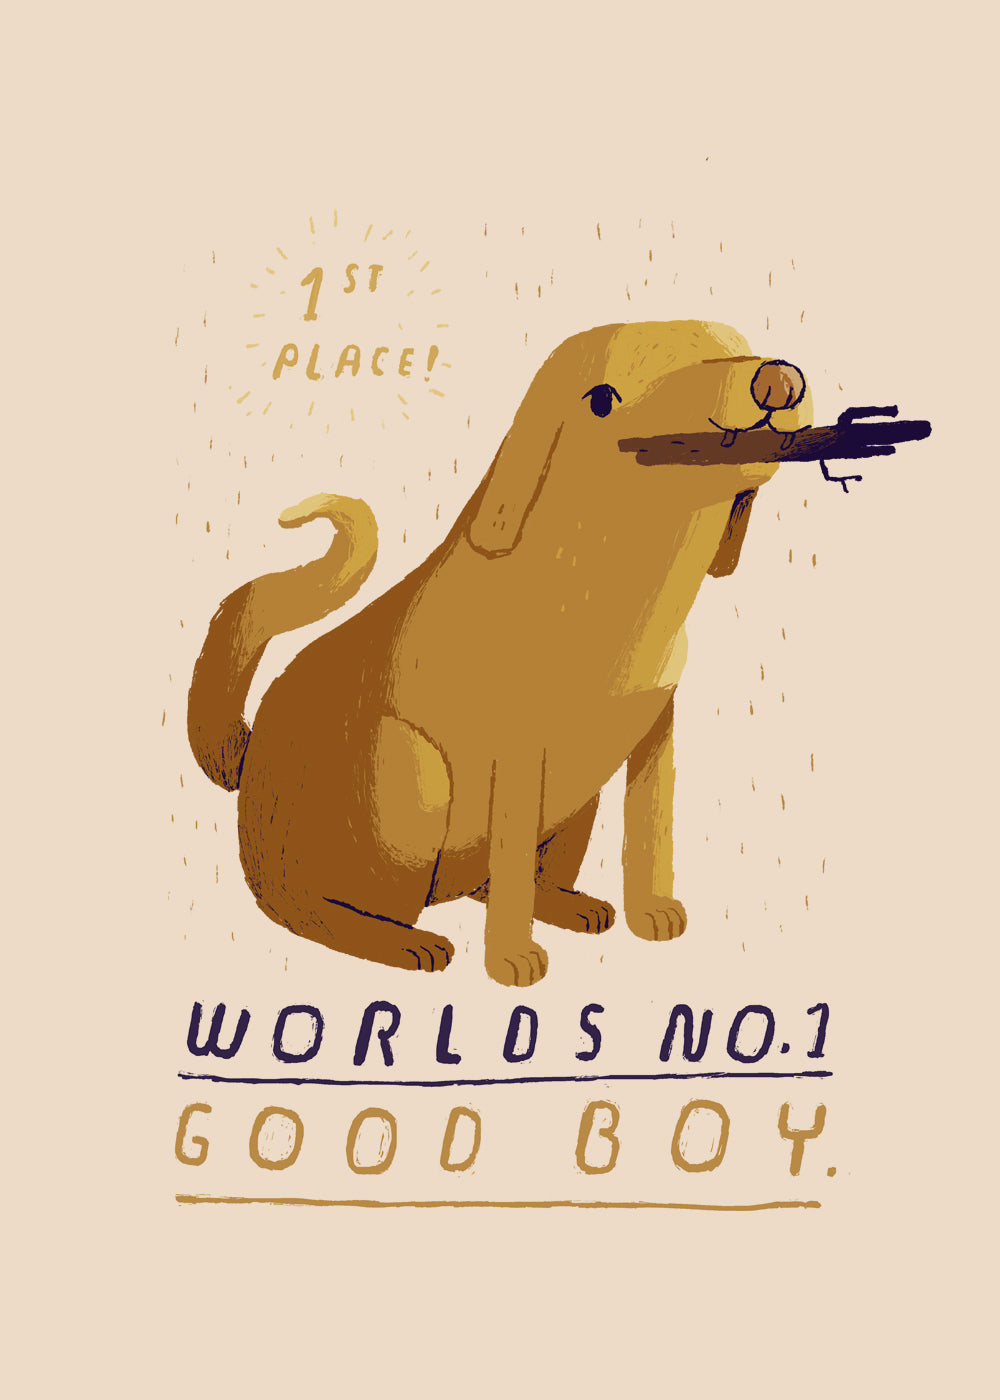 Worlds no.1 good boy